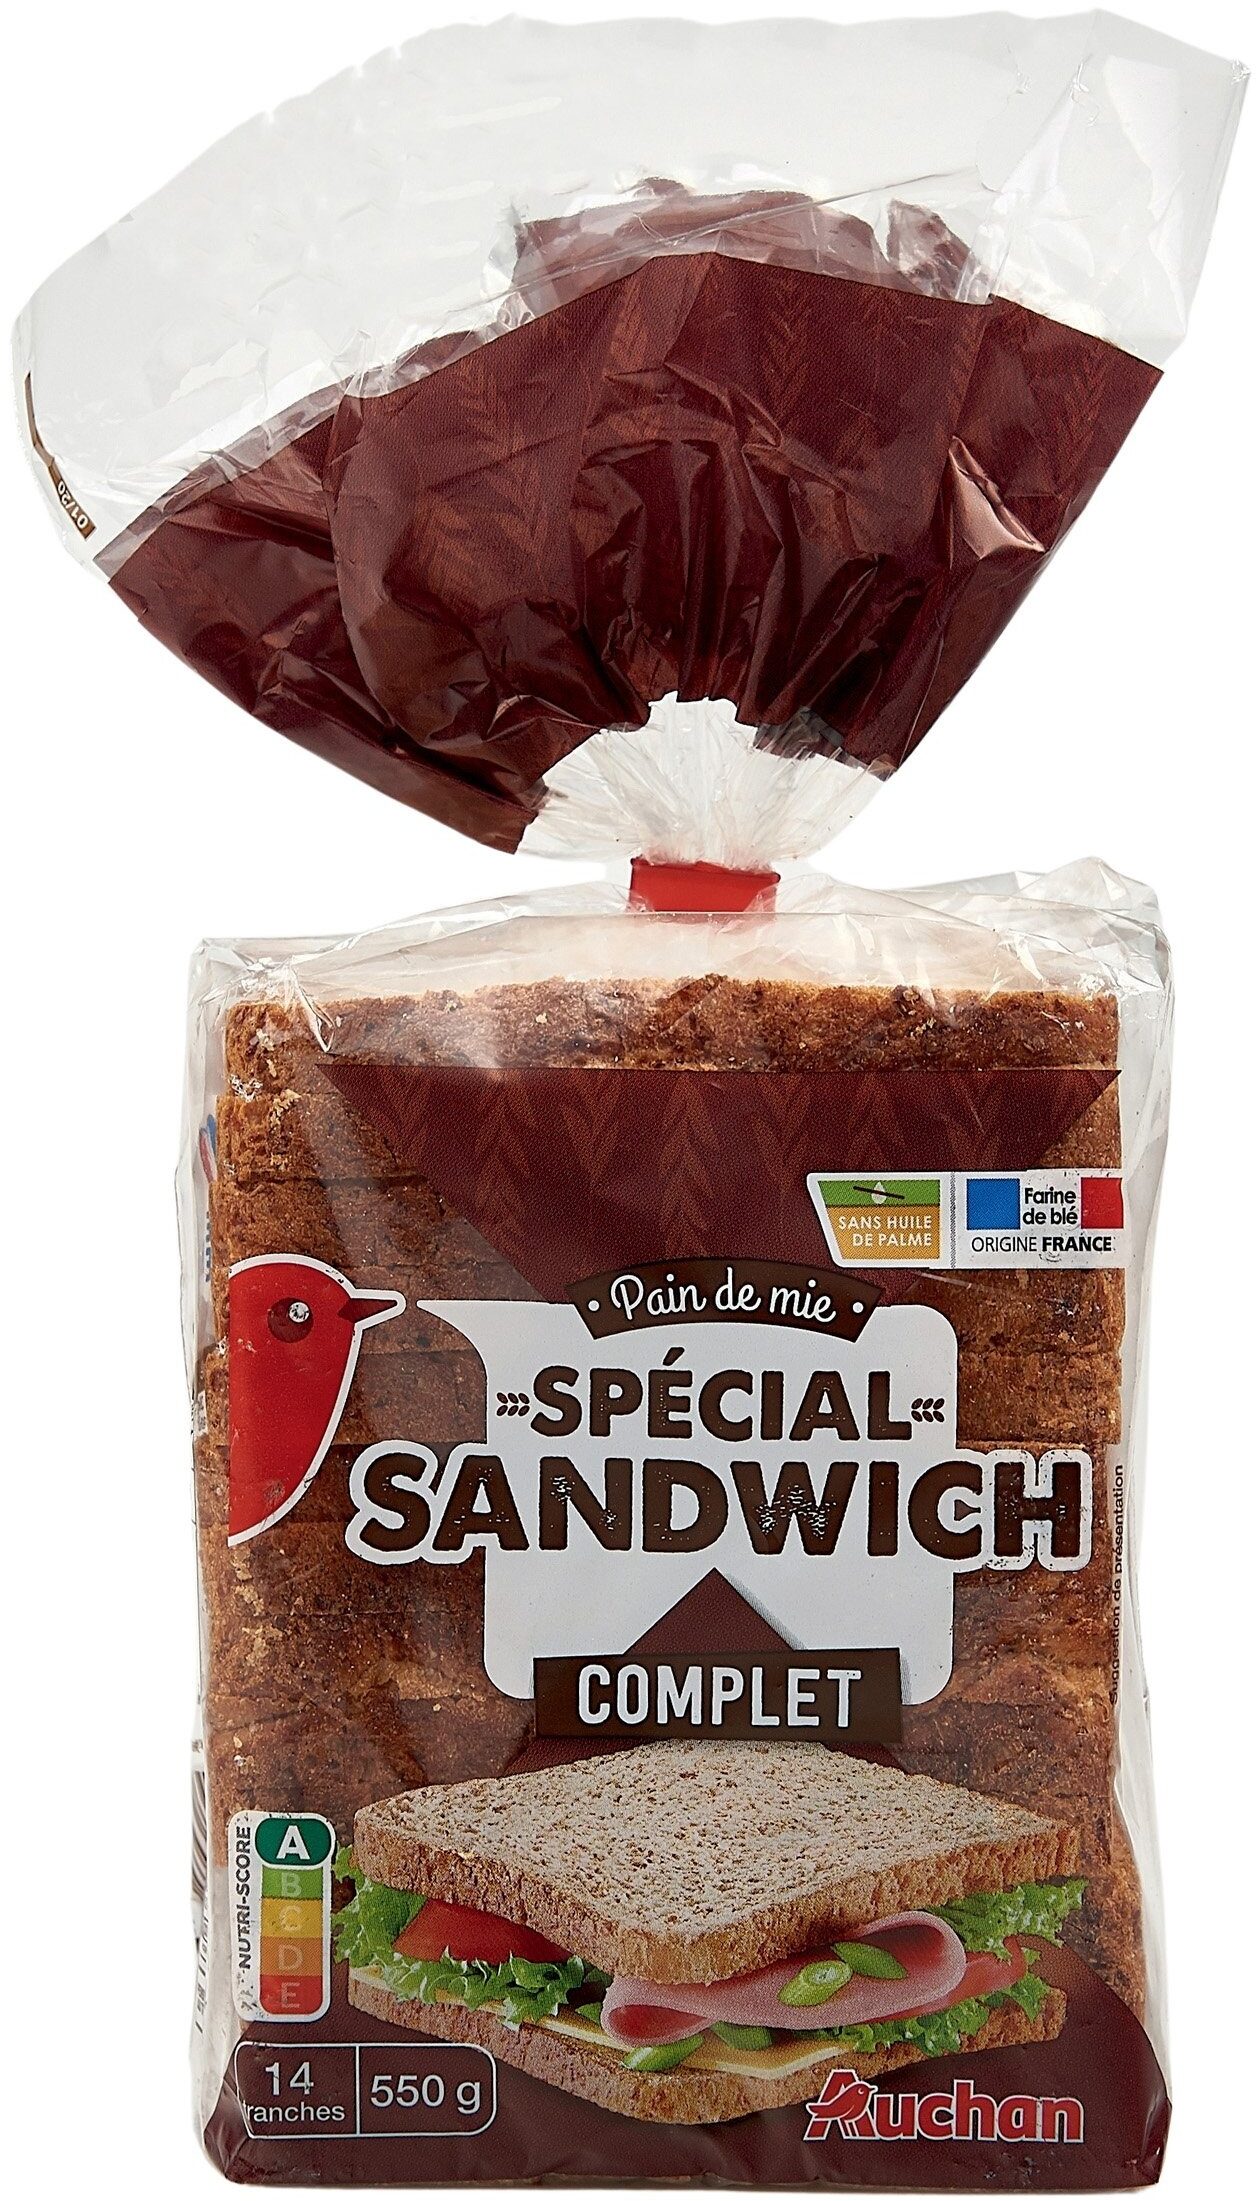 Pain de mie spécial sandwich Grandes Tranches completExtra moelleux - Produkt - fr